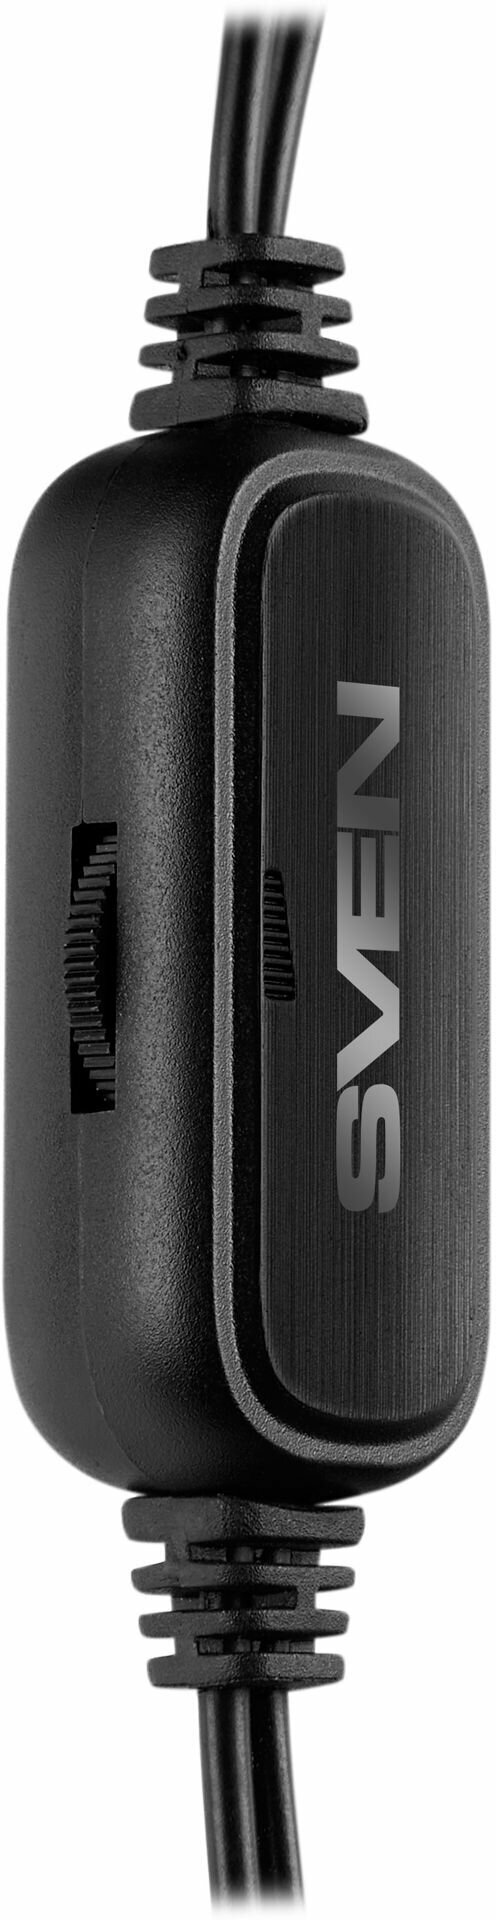 Колонки для компьютера 20 SVEN 305 чёрный / USB / подсветка / 6 Вт